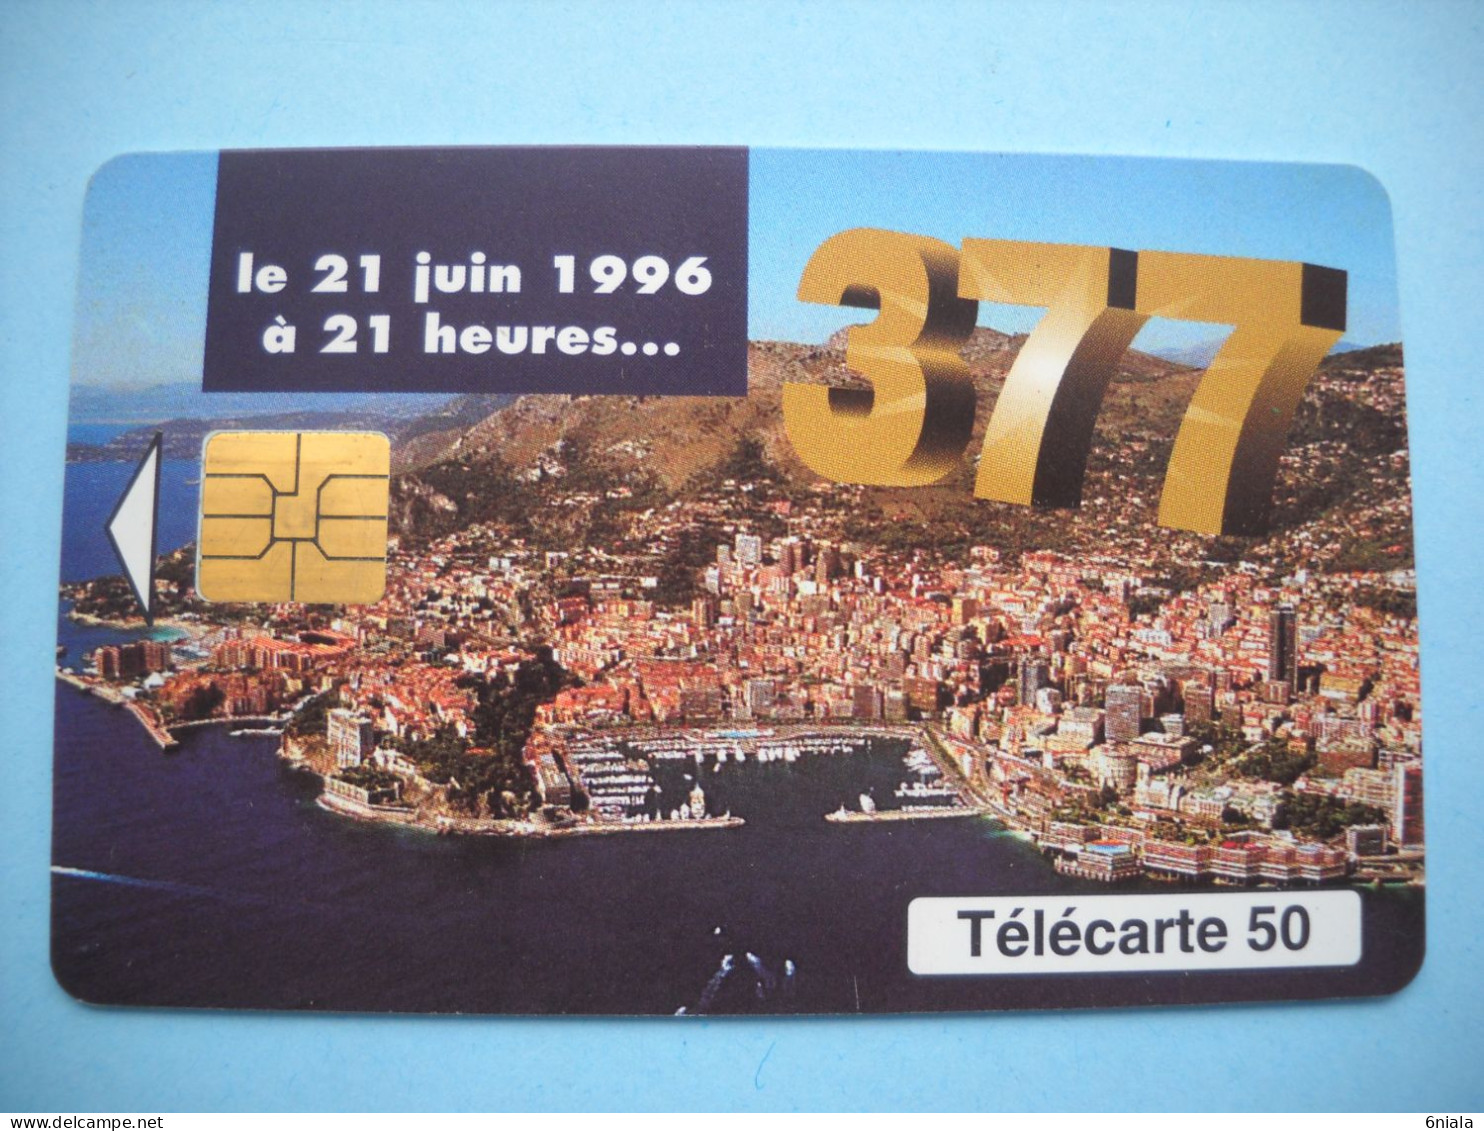 7657 MONACO Le 21 Juin 1996 377 Téléphoner En Principauté   Télécarte Collection  ( 2 Scans)  Carte Téléphonique - Monace